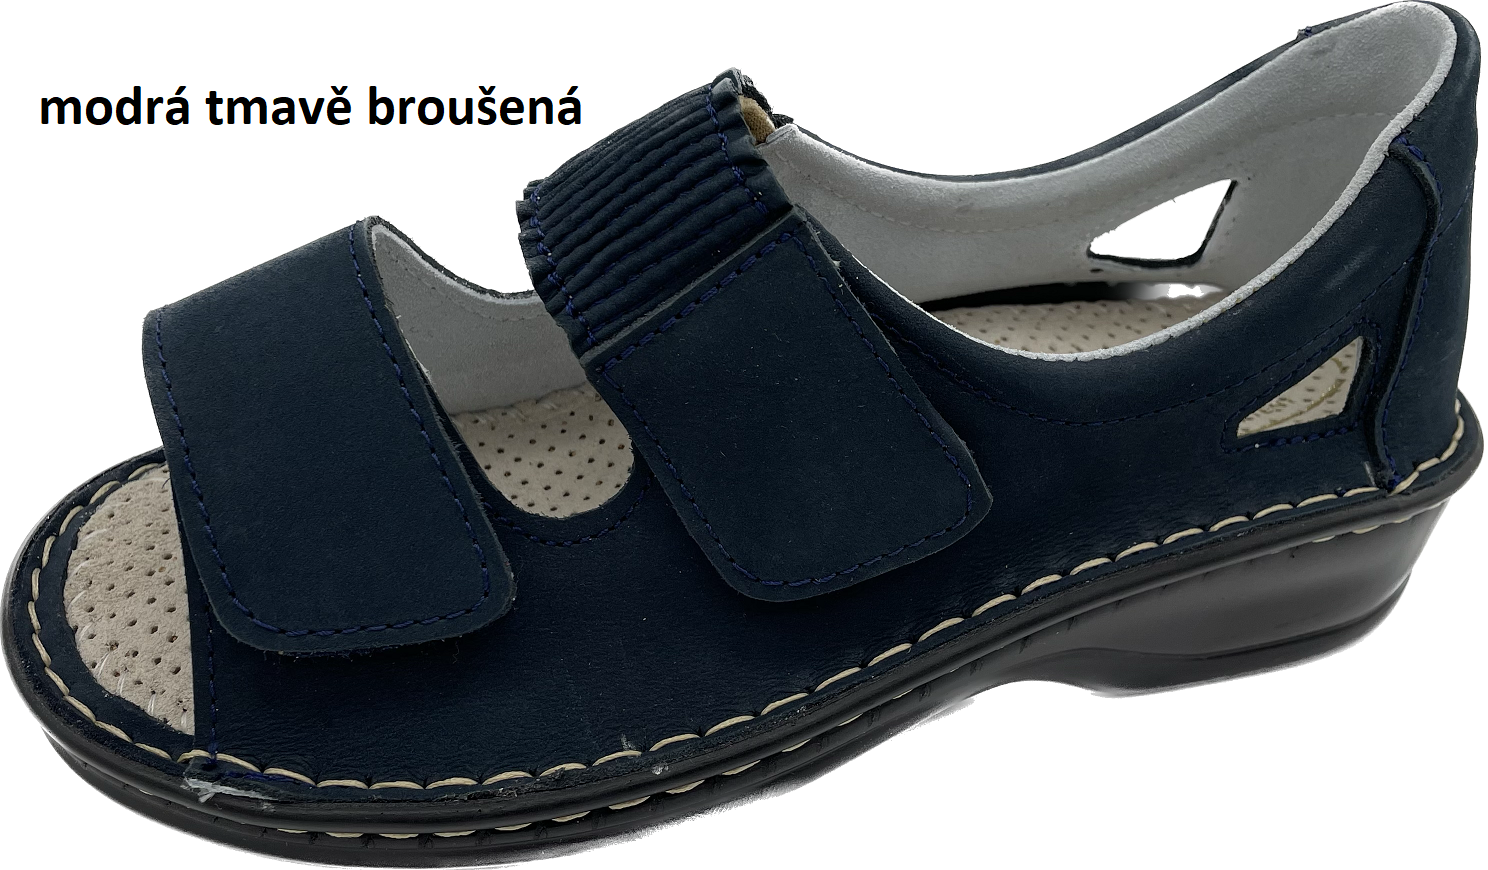 Boty Hanák vzor 306 - černá podešev Barva usně: modrá tmavě broušená, Velikosti obuvi: 35